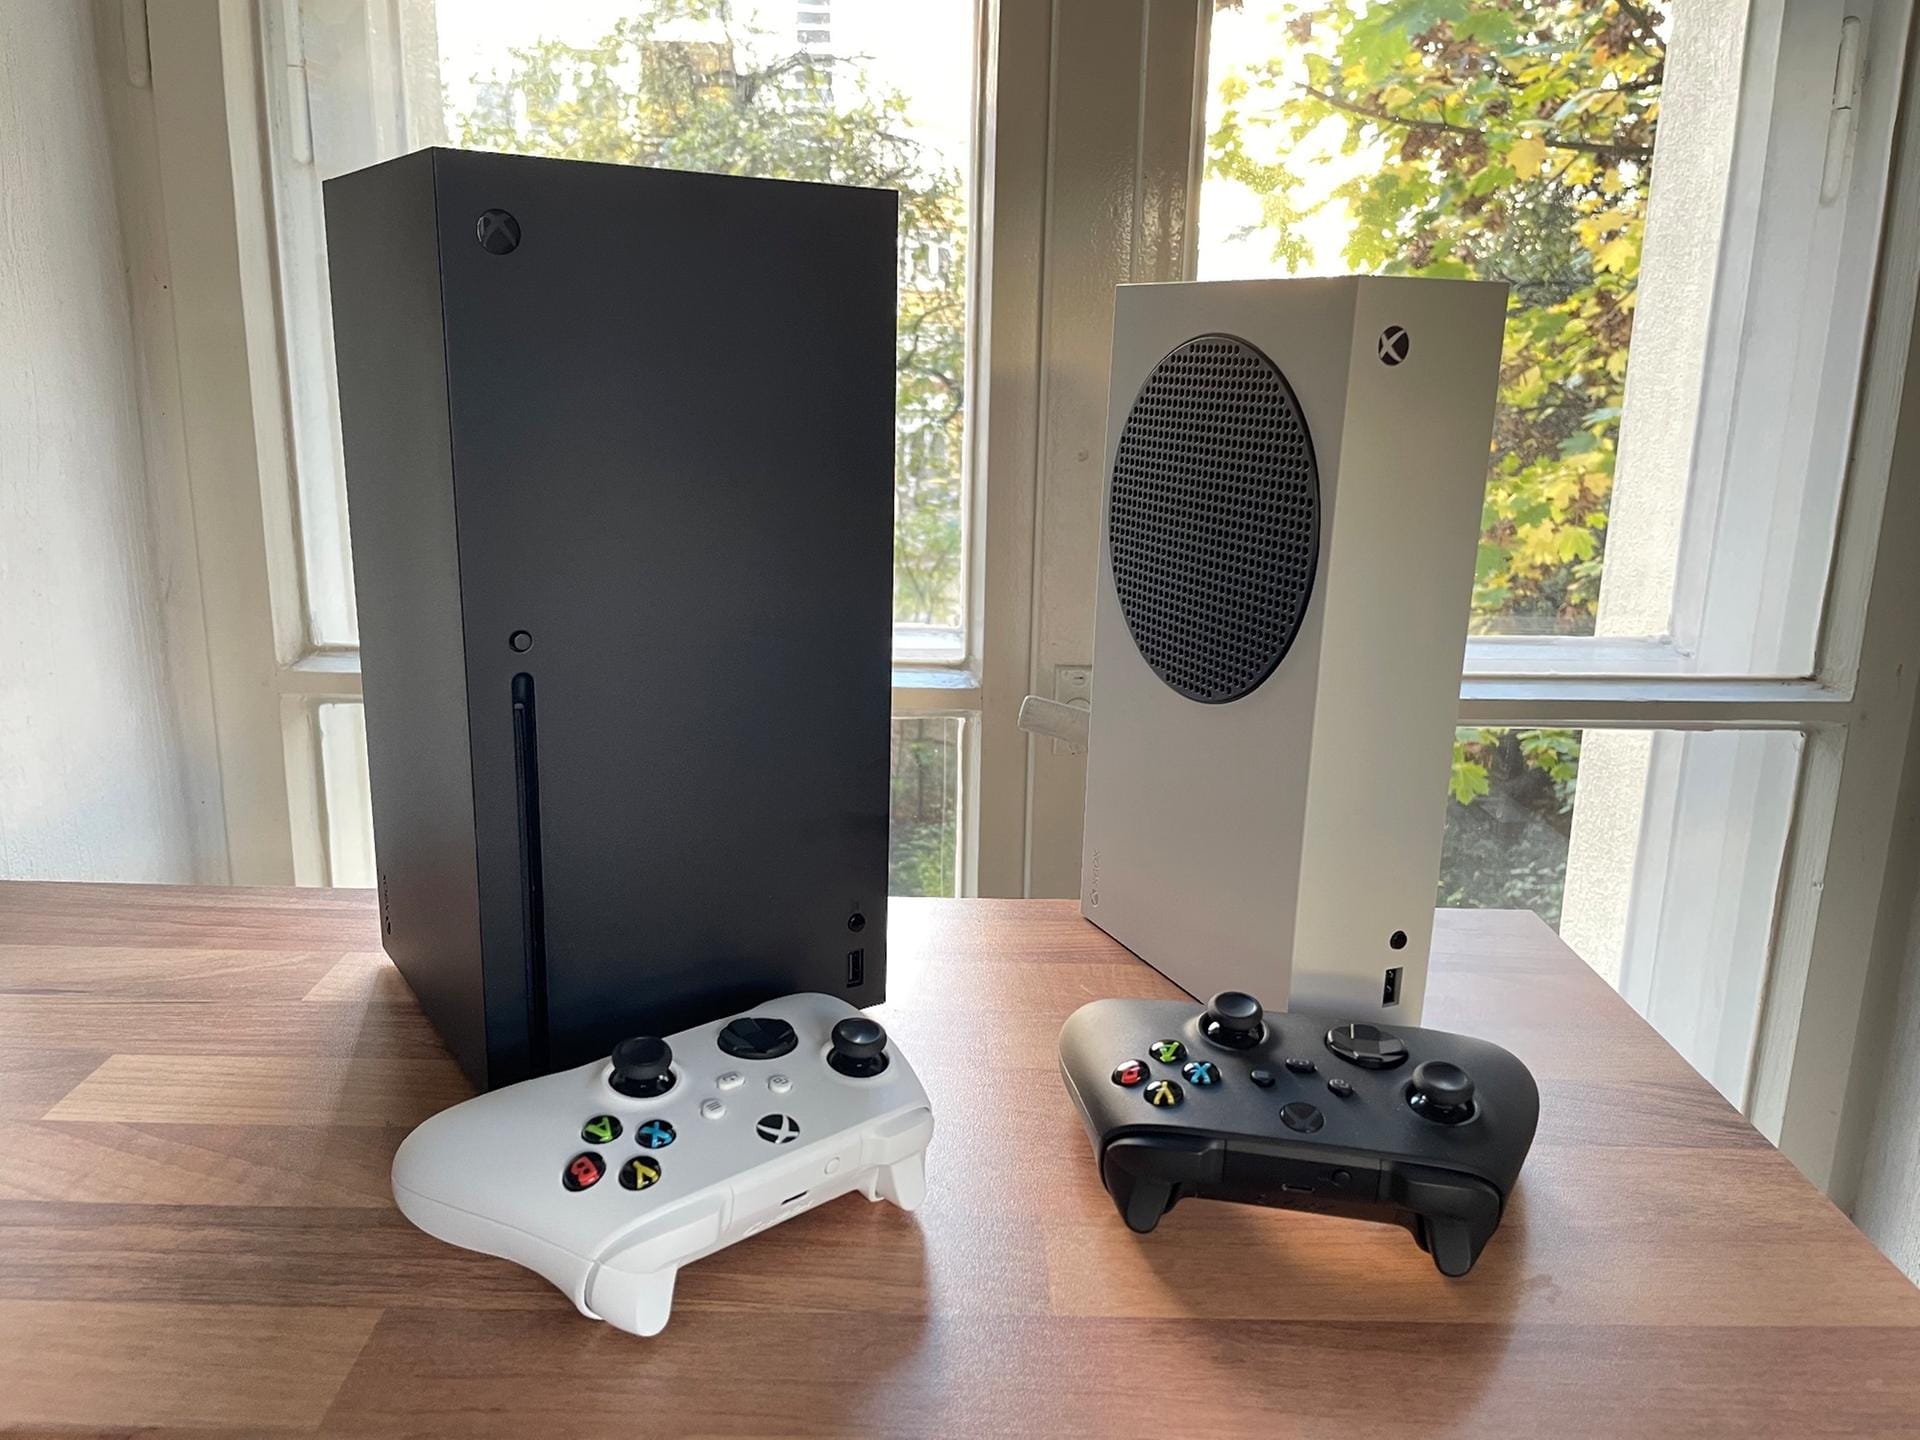 Hier die beiden Konsolen im Größenvergleich: Links die Xbox Series X, rechts die Xbox Series S.